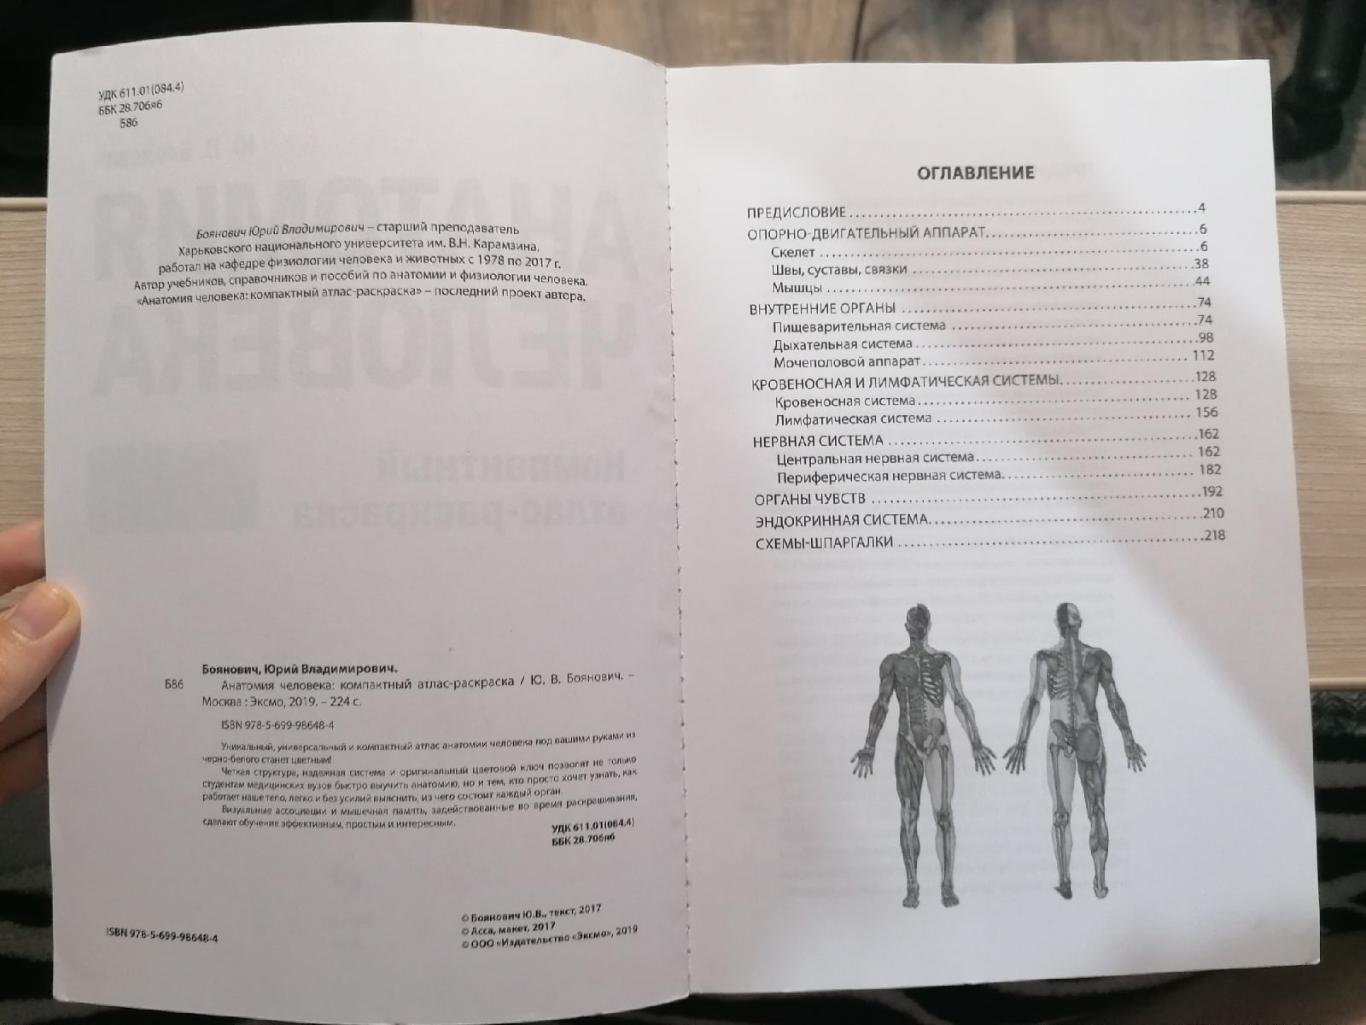 Компактный атлас-раскраска по дисциплине: Анатомия человека Ю.В. Боянович 1